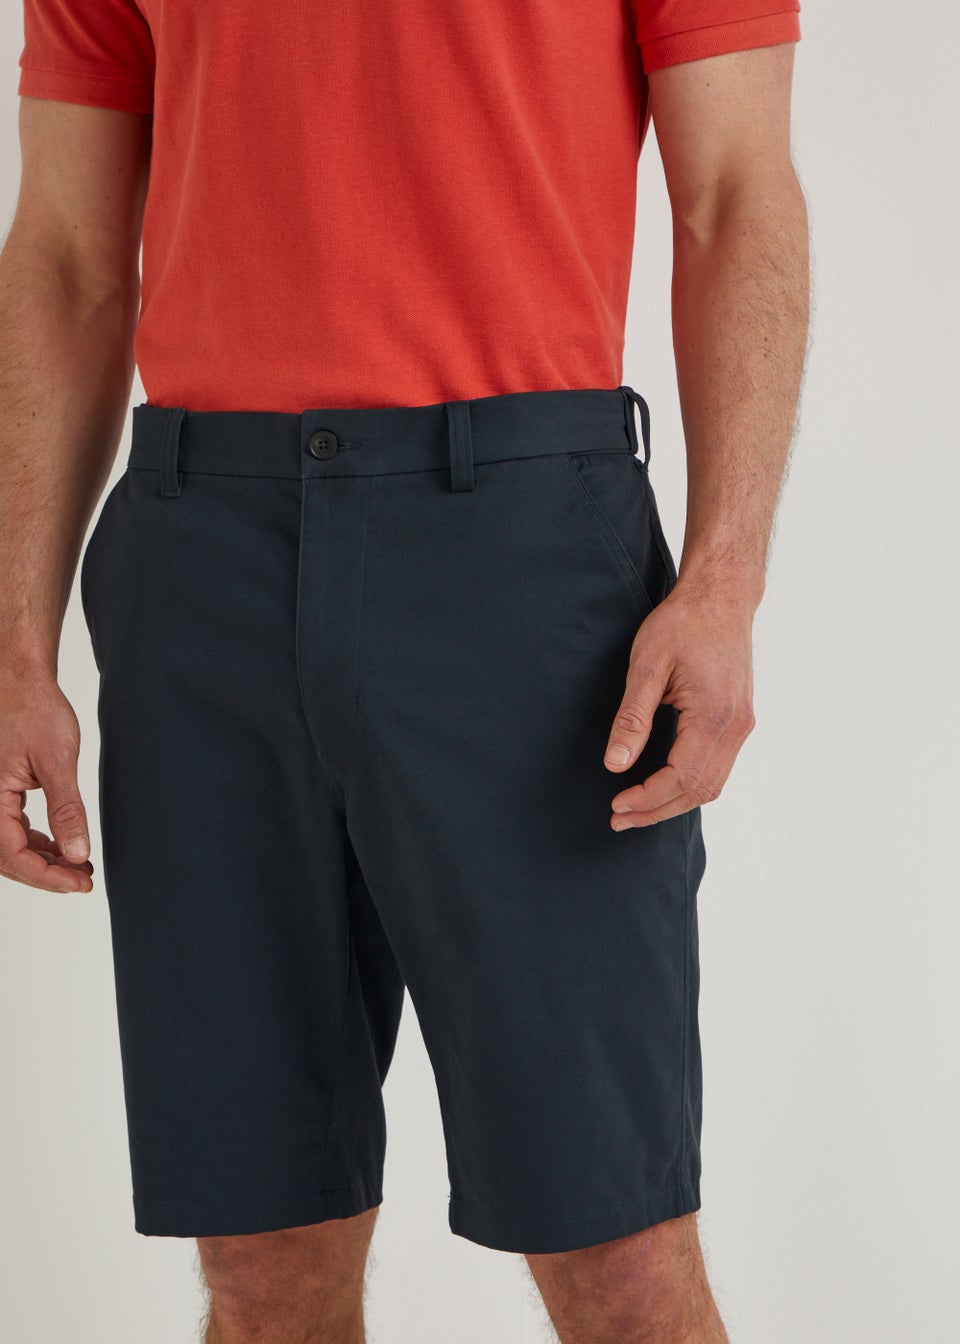 Lincoln Navy Belted Shorts - Matalan